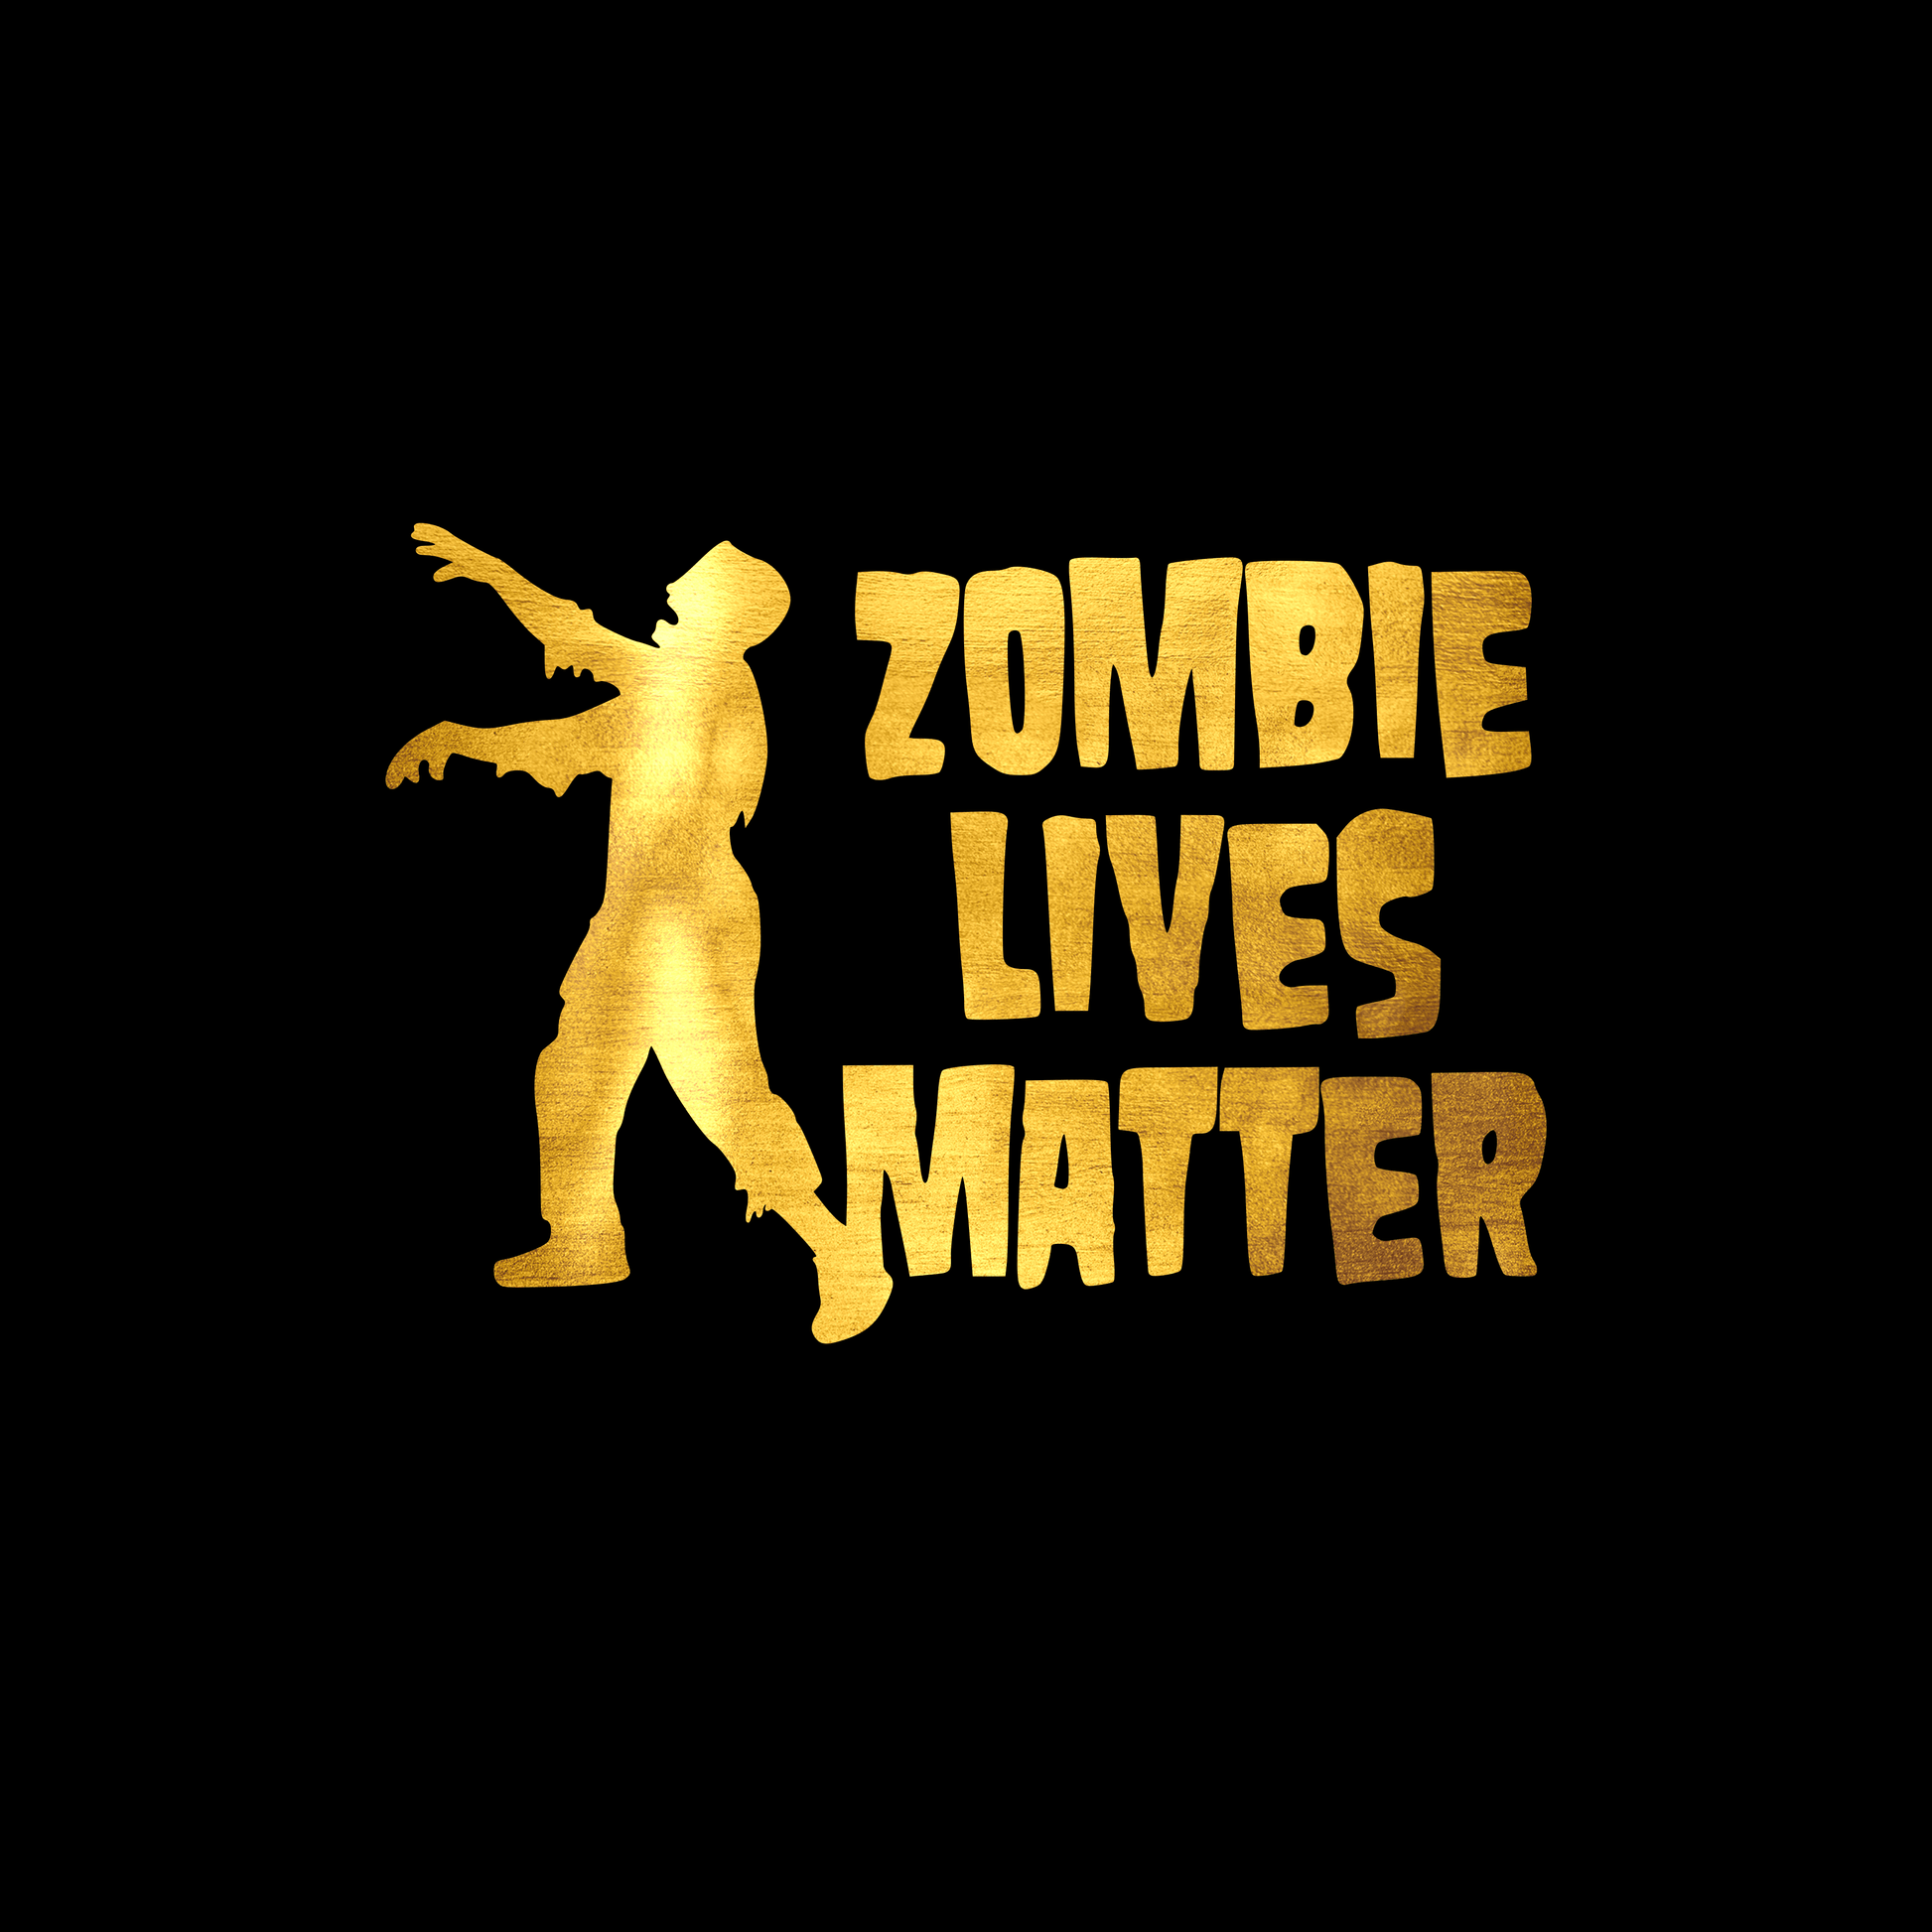 Zombie lives matter sticker decal